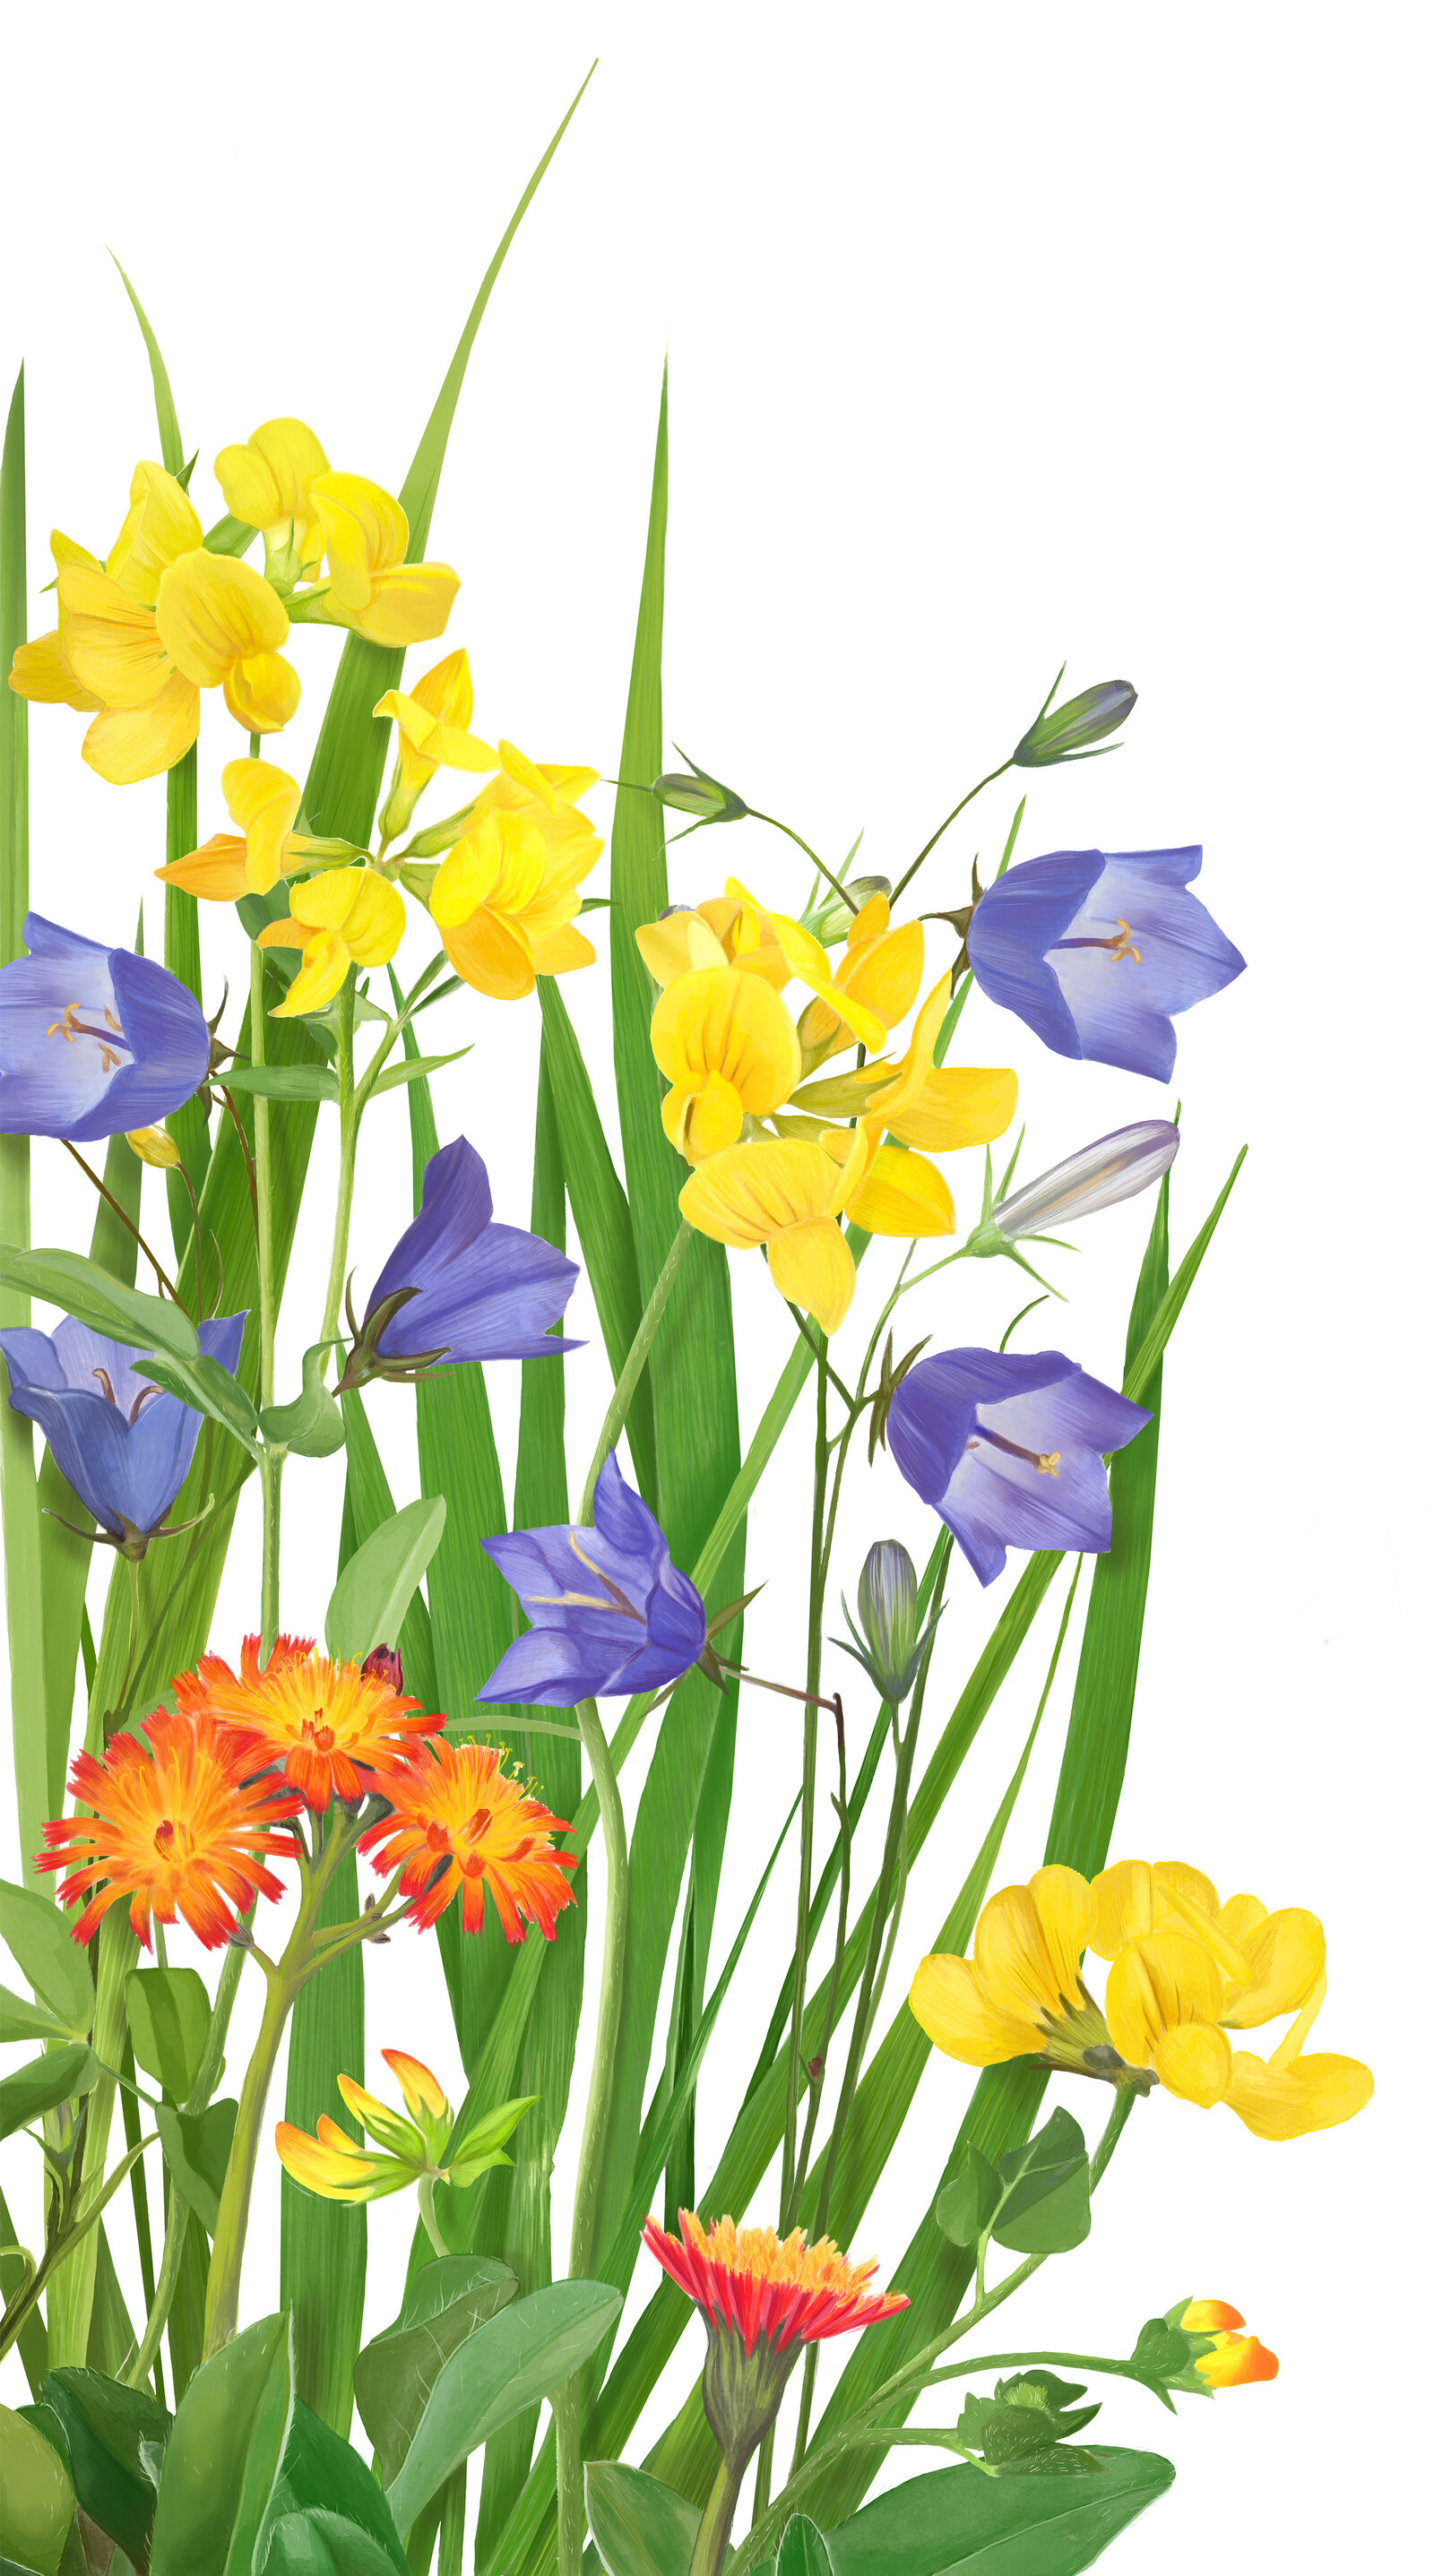 oculus-illustration-pflanzenillustration-hauert-verpackungsdesign-wildblumen-4